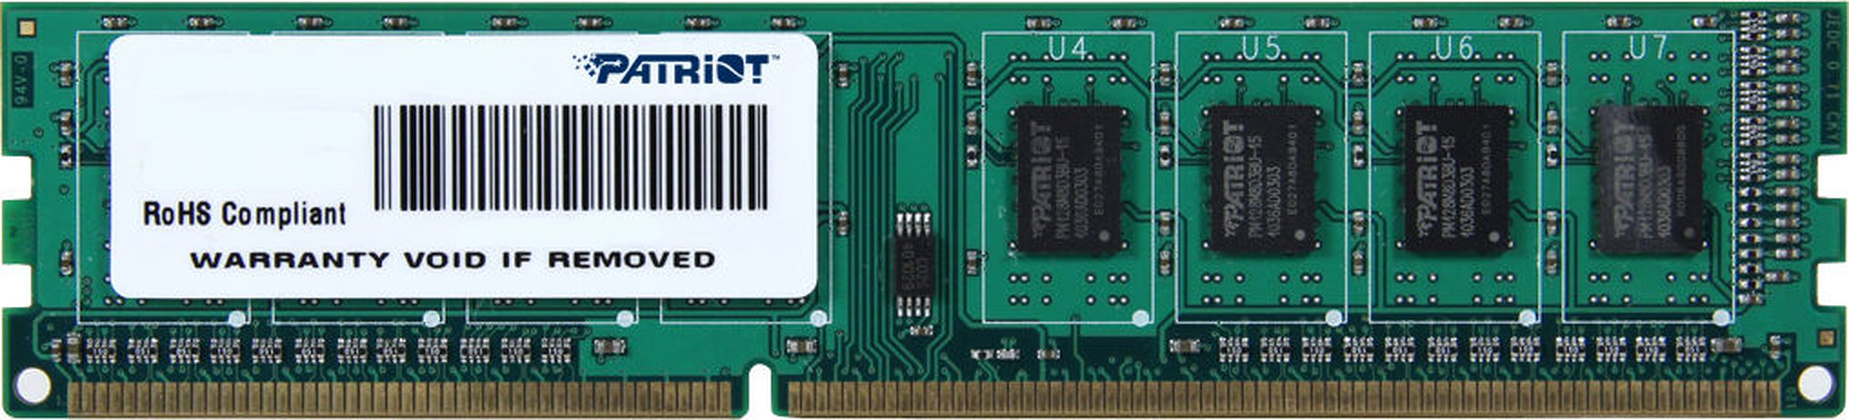 ОЗУ Patriot PSD34G160081 DDR3 4 Гб (1x4 Гб)